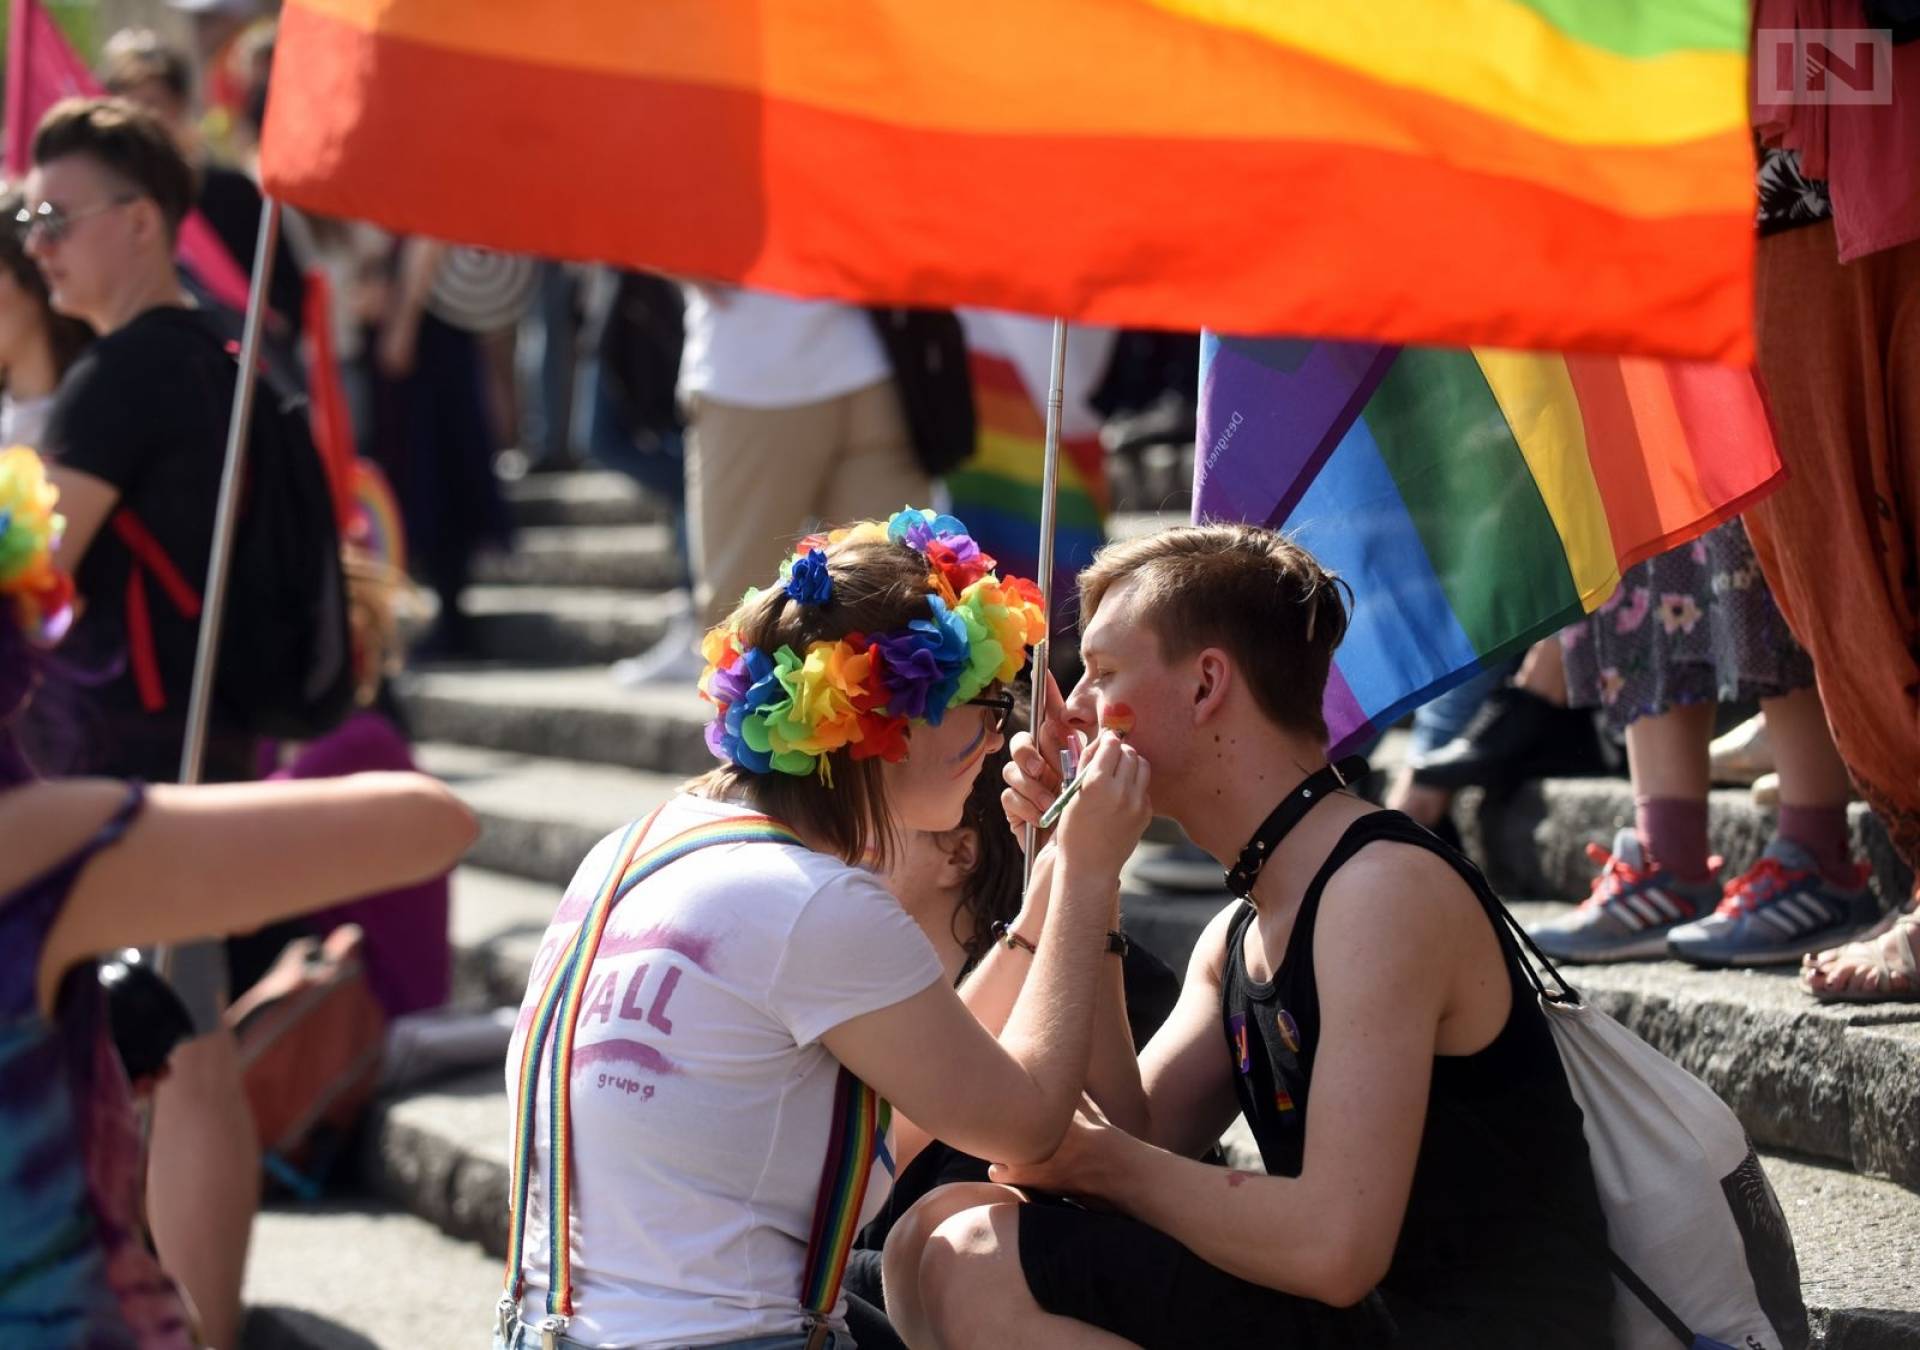 Ruszy kino letnie poświęcone społeczności LGBT+